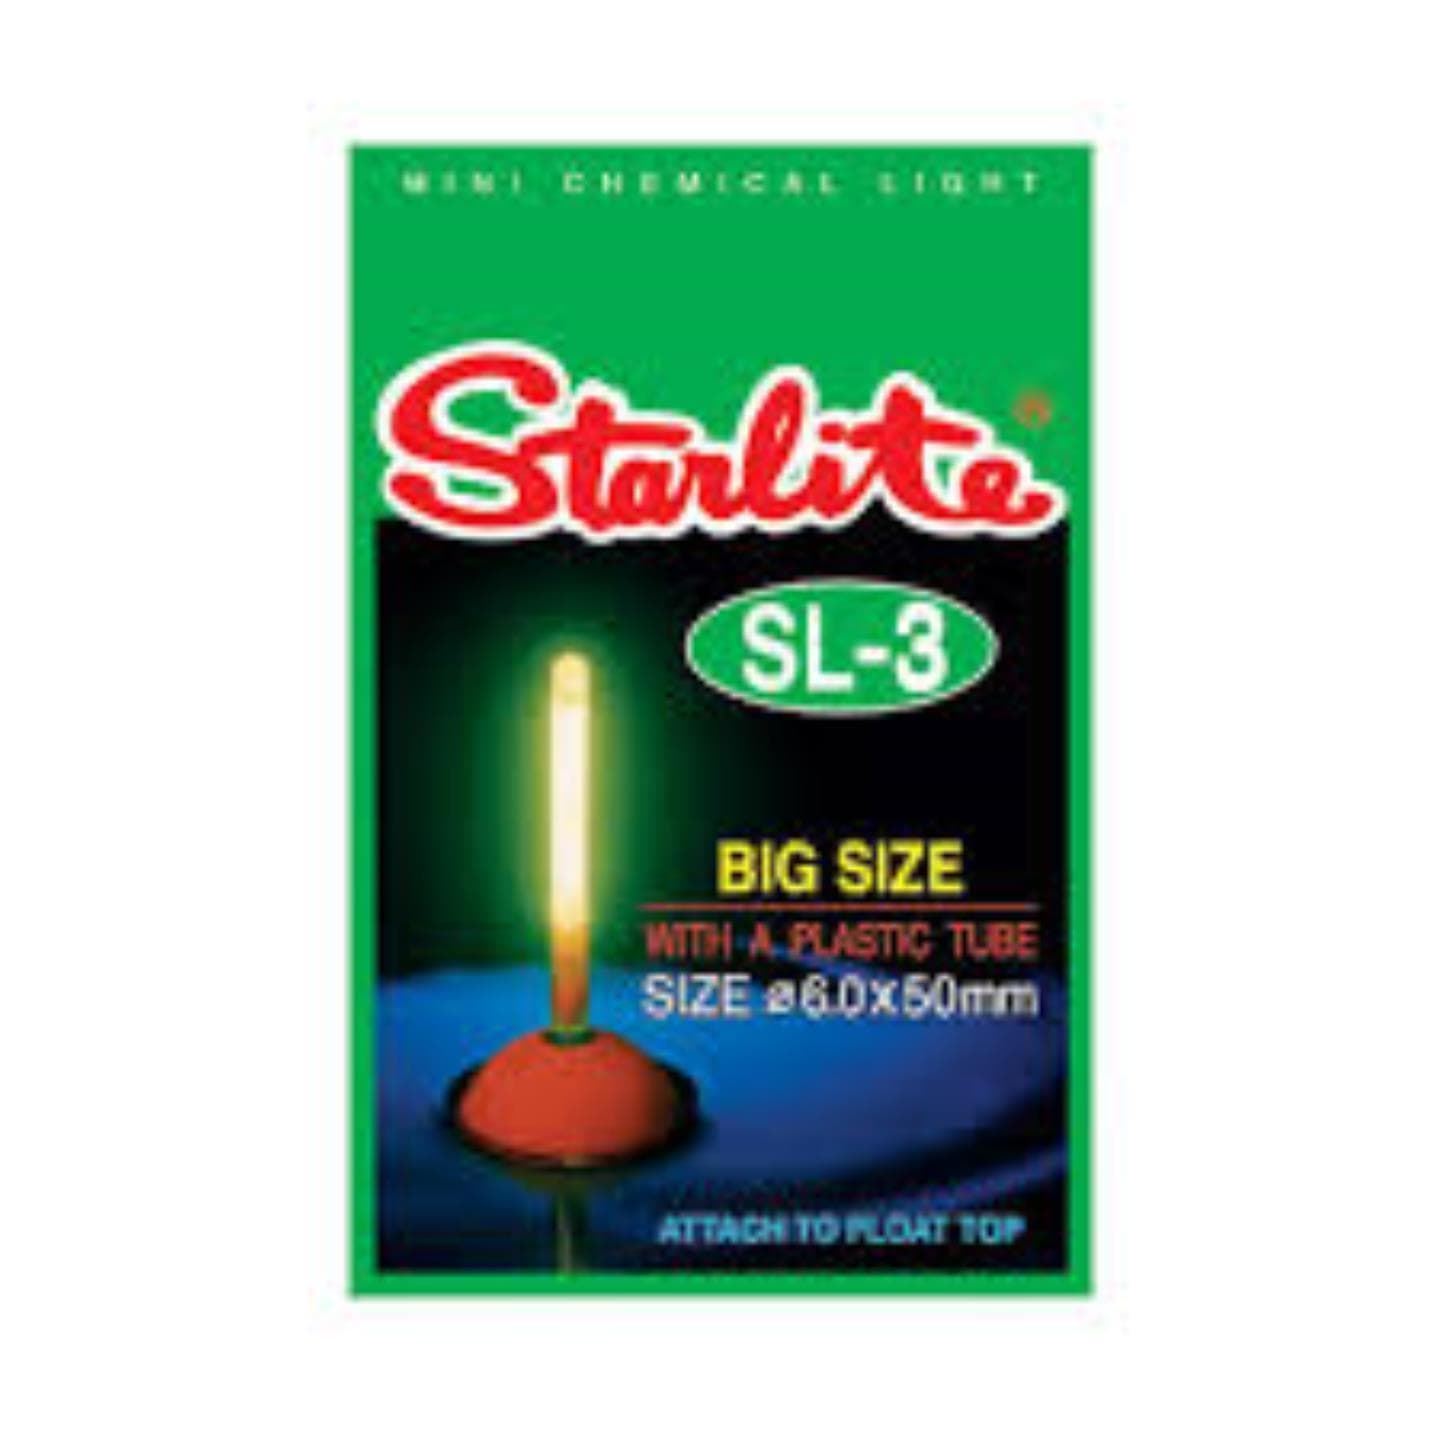 Luces químicas STARLITE Big size 6.0x50mm - Imagen 1